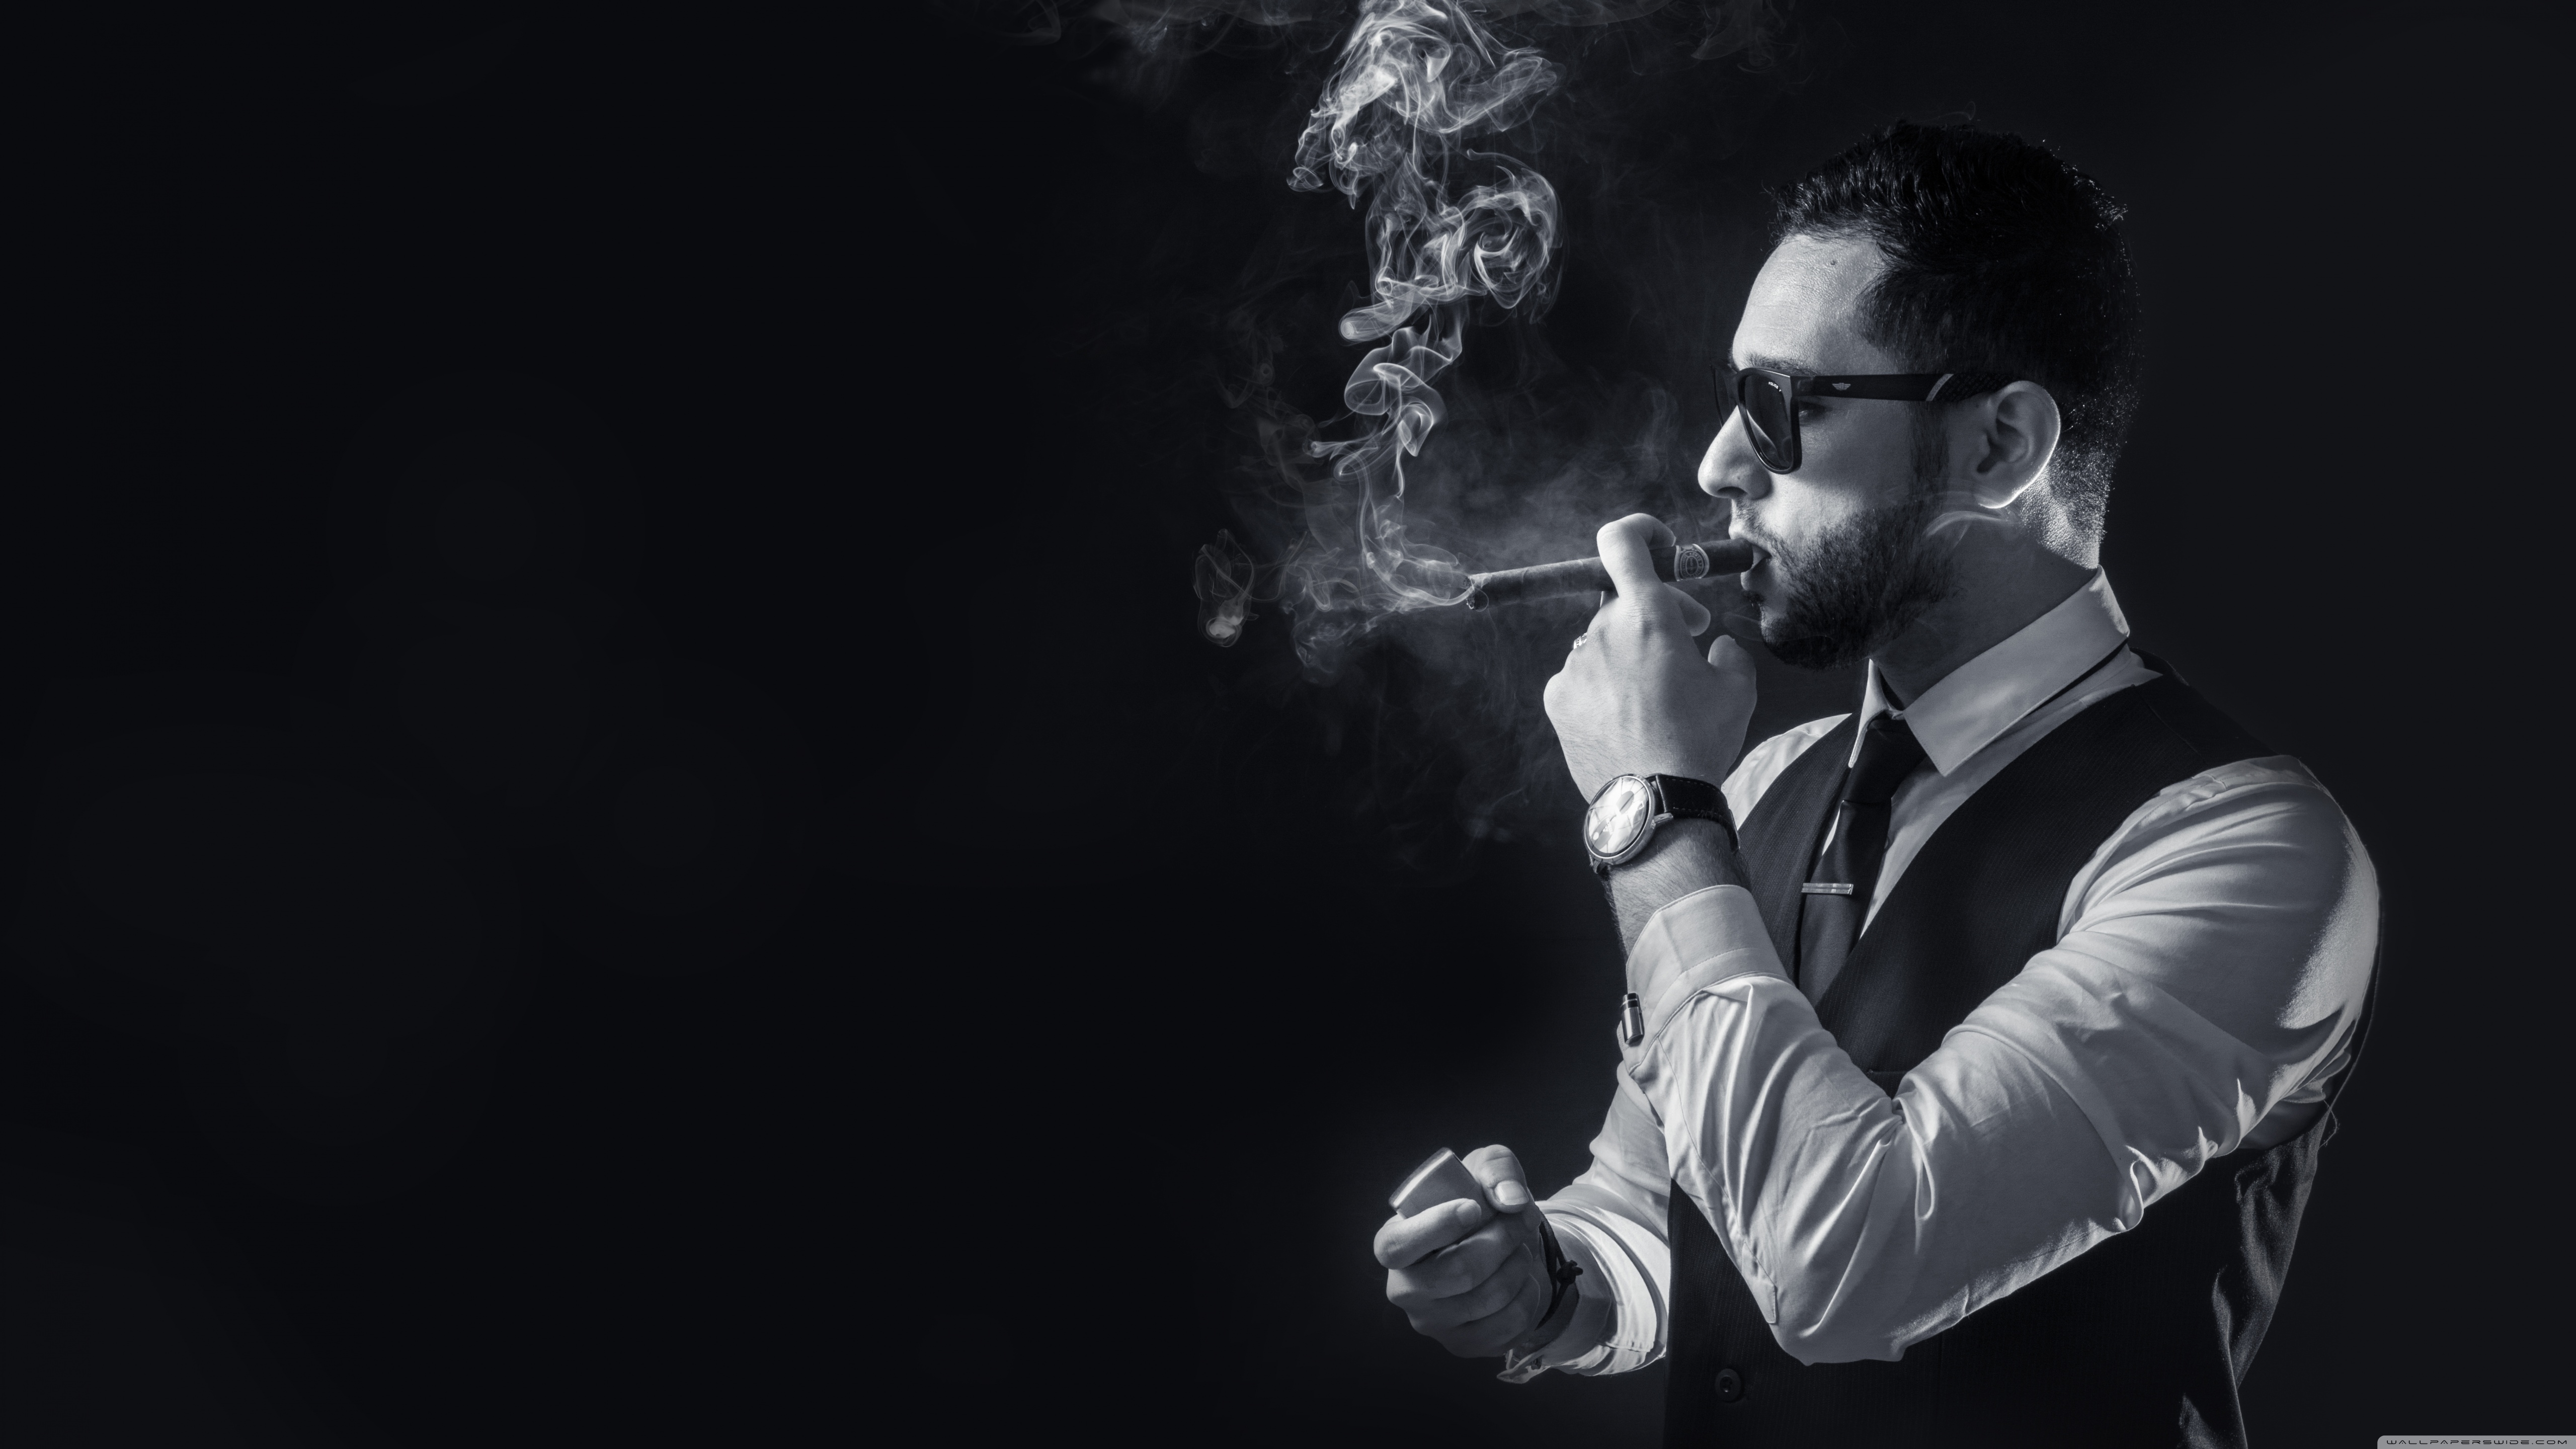 mejores fondos de pantalla para hombres,fotografía,de fumar,en blanco y negro,fumar,fotografía